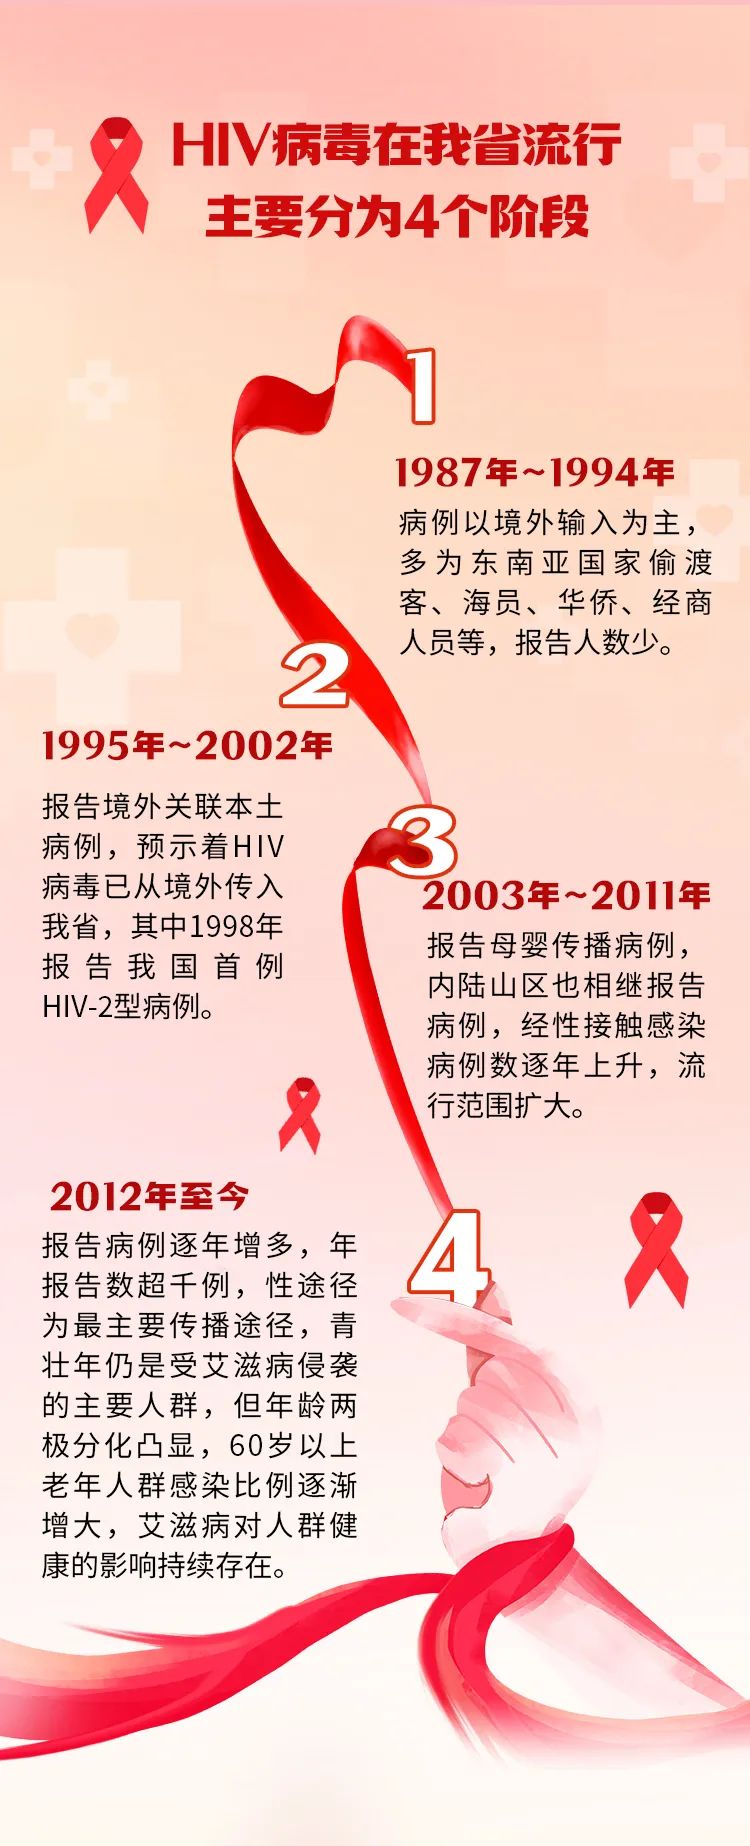 “世界艾滋病日”来临 说说福建防艾那些事儿